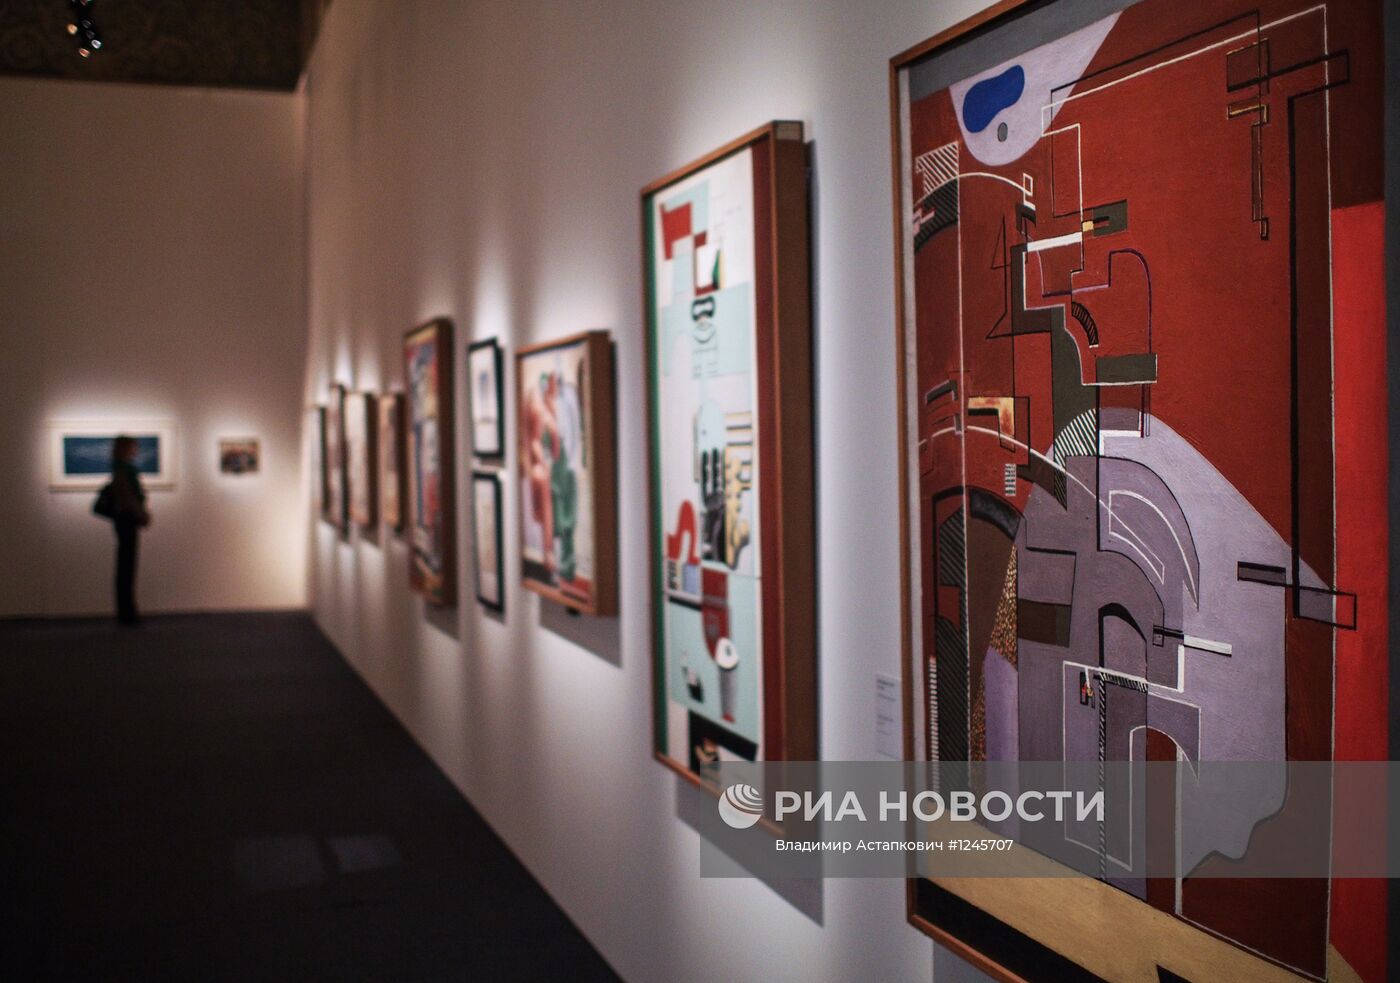 Открытие выставки Ле Корбюзье в Москве